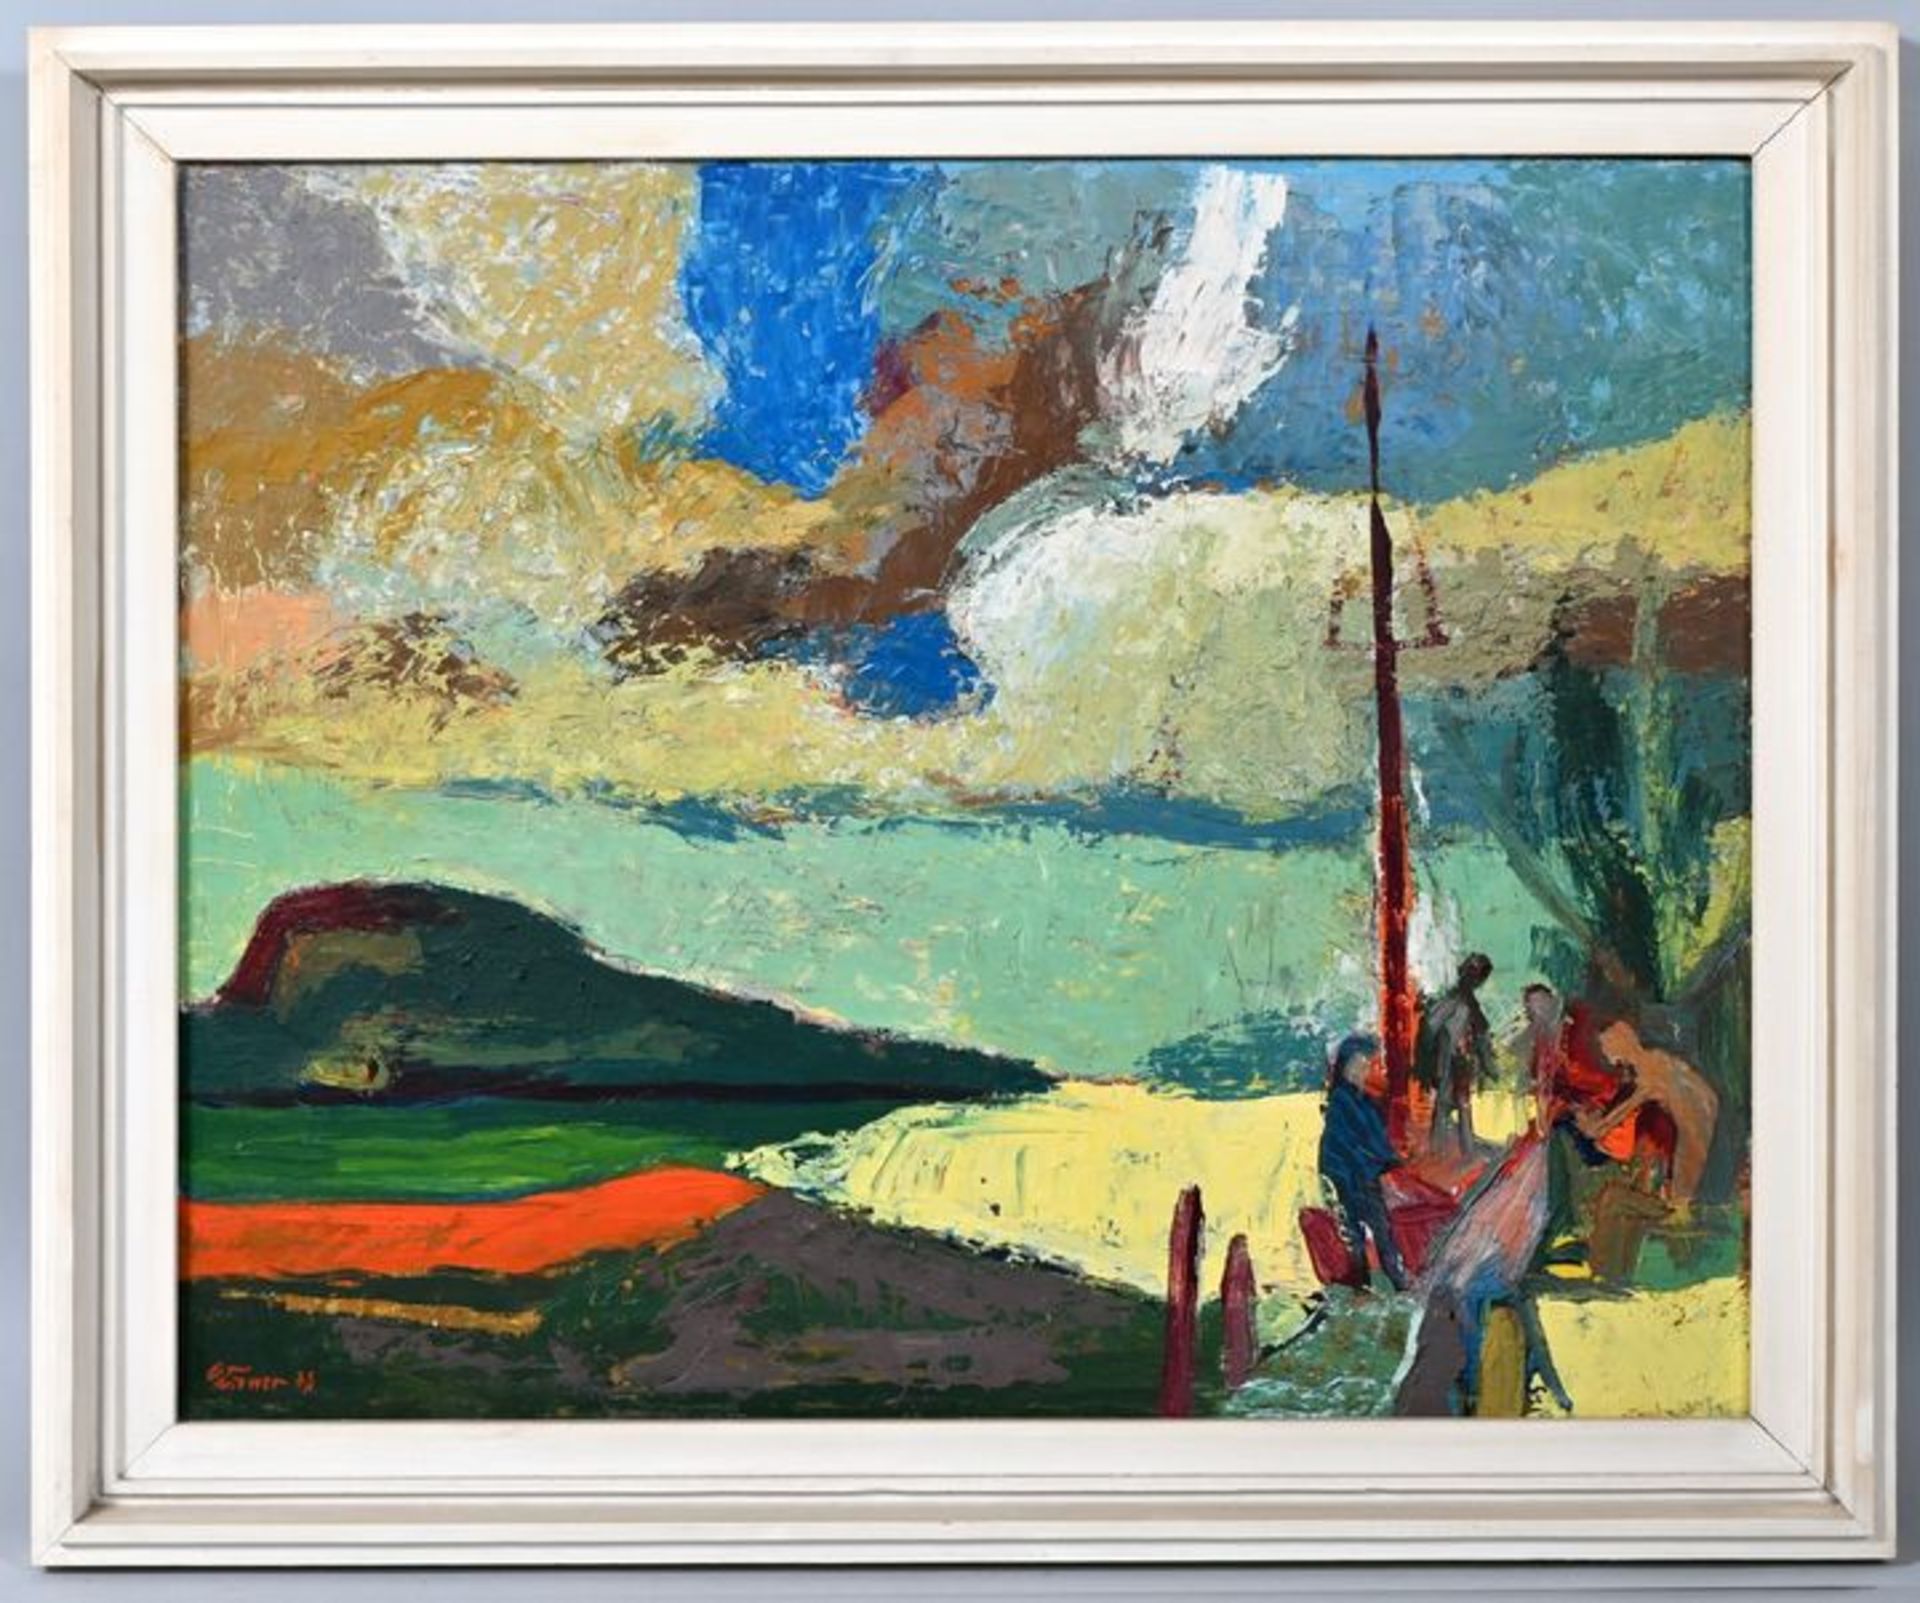 Körner, Gemälde mit Landschaft/Körner, painting with landscape